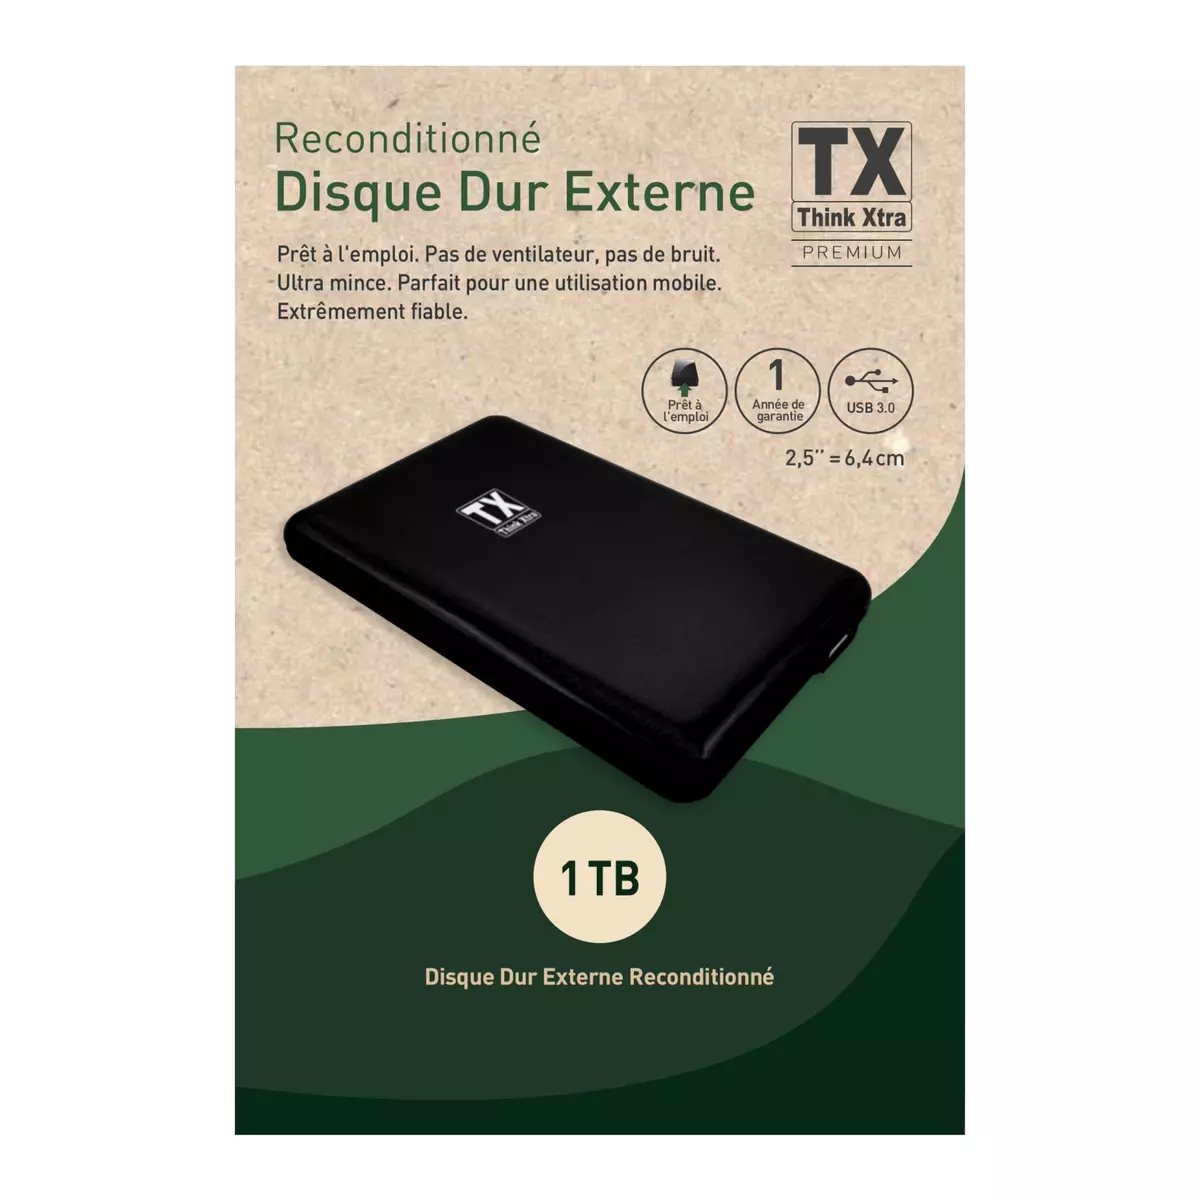 TX Disque dur externe reconditionné 1 TO USB 3.0 - Noir